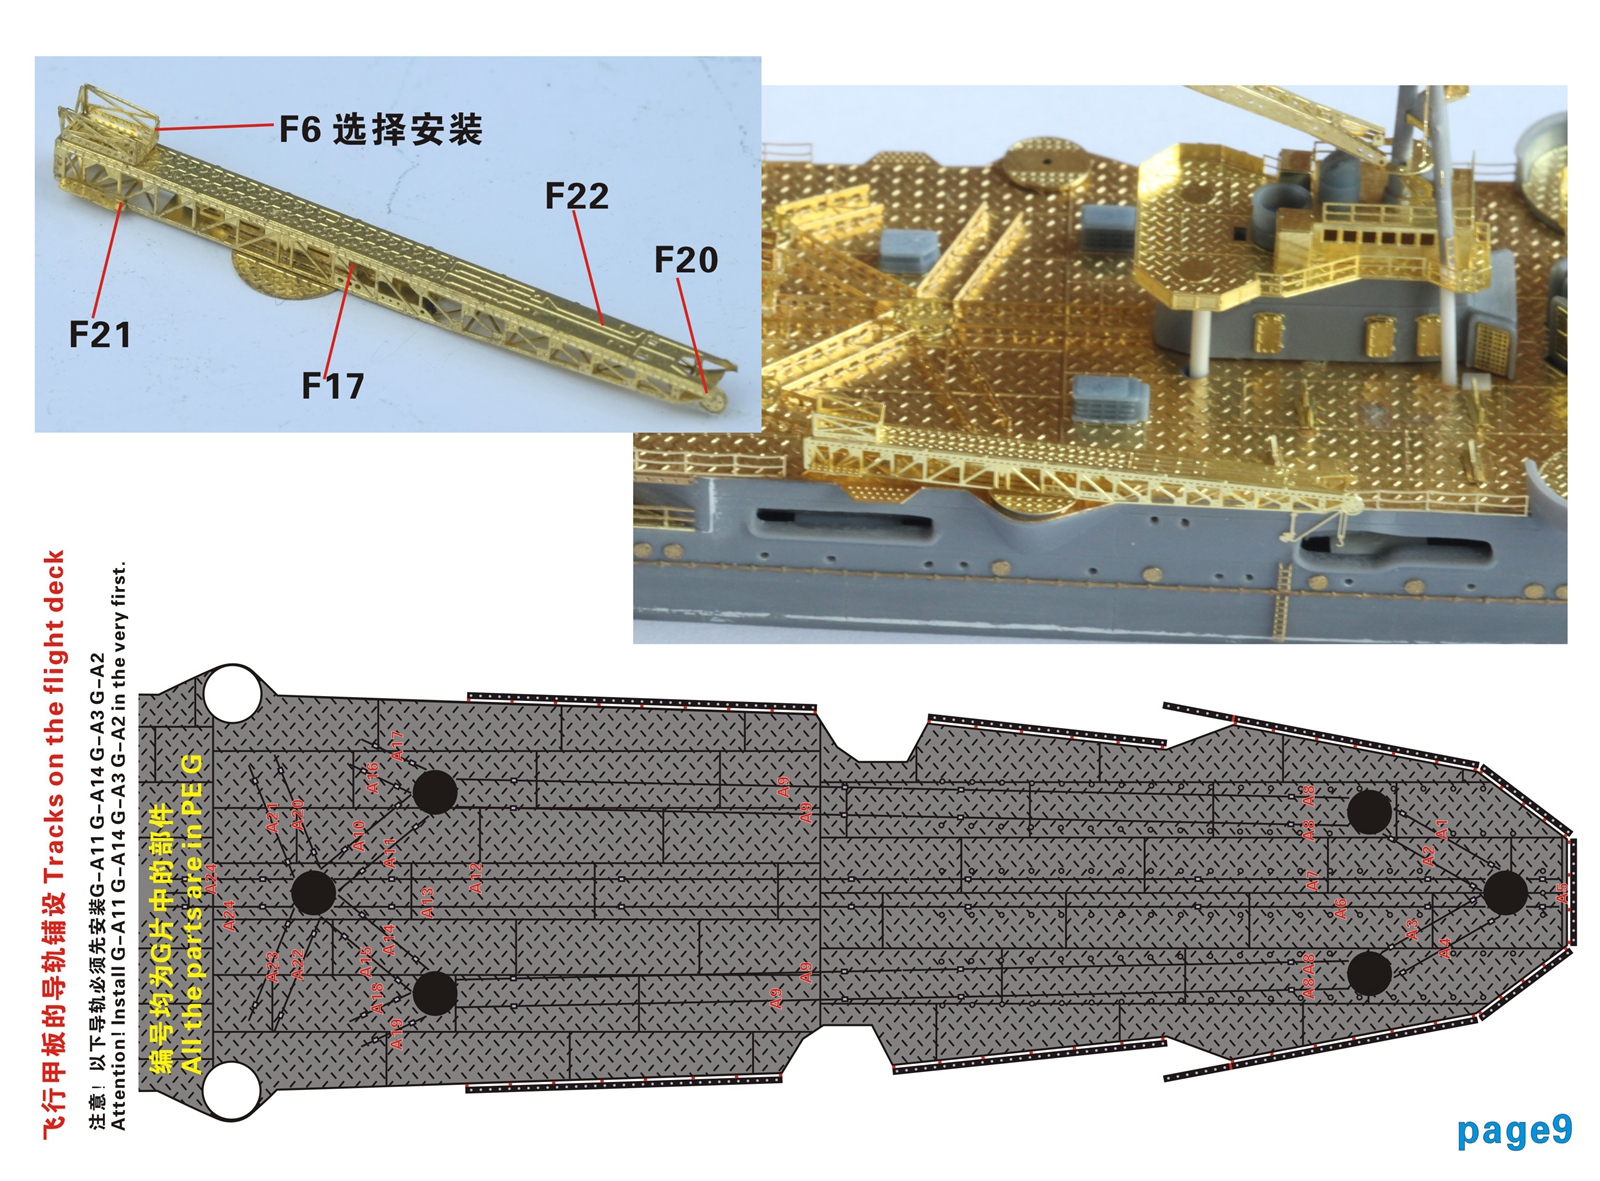 1/700 IJN Aircraft Cruiser Mogami Upgrade Set for Tamiya 31341 - Click Image to Close